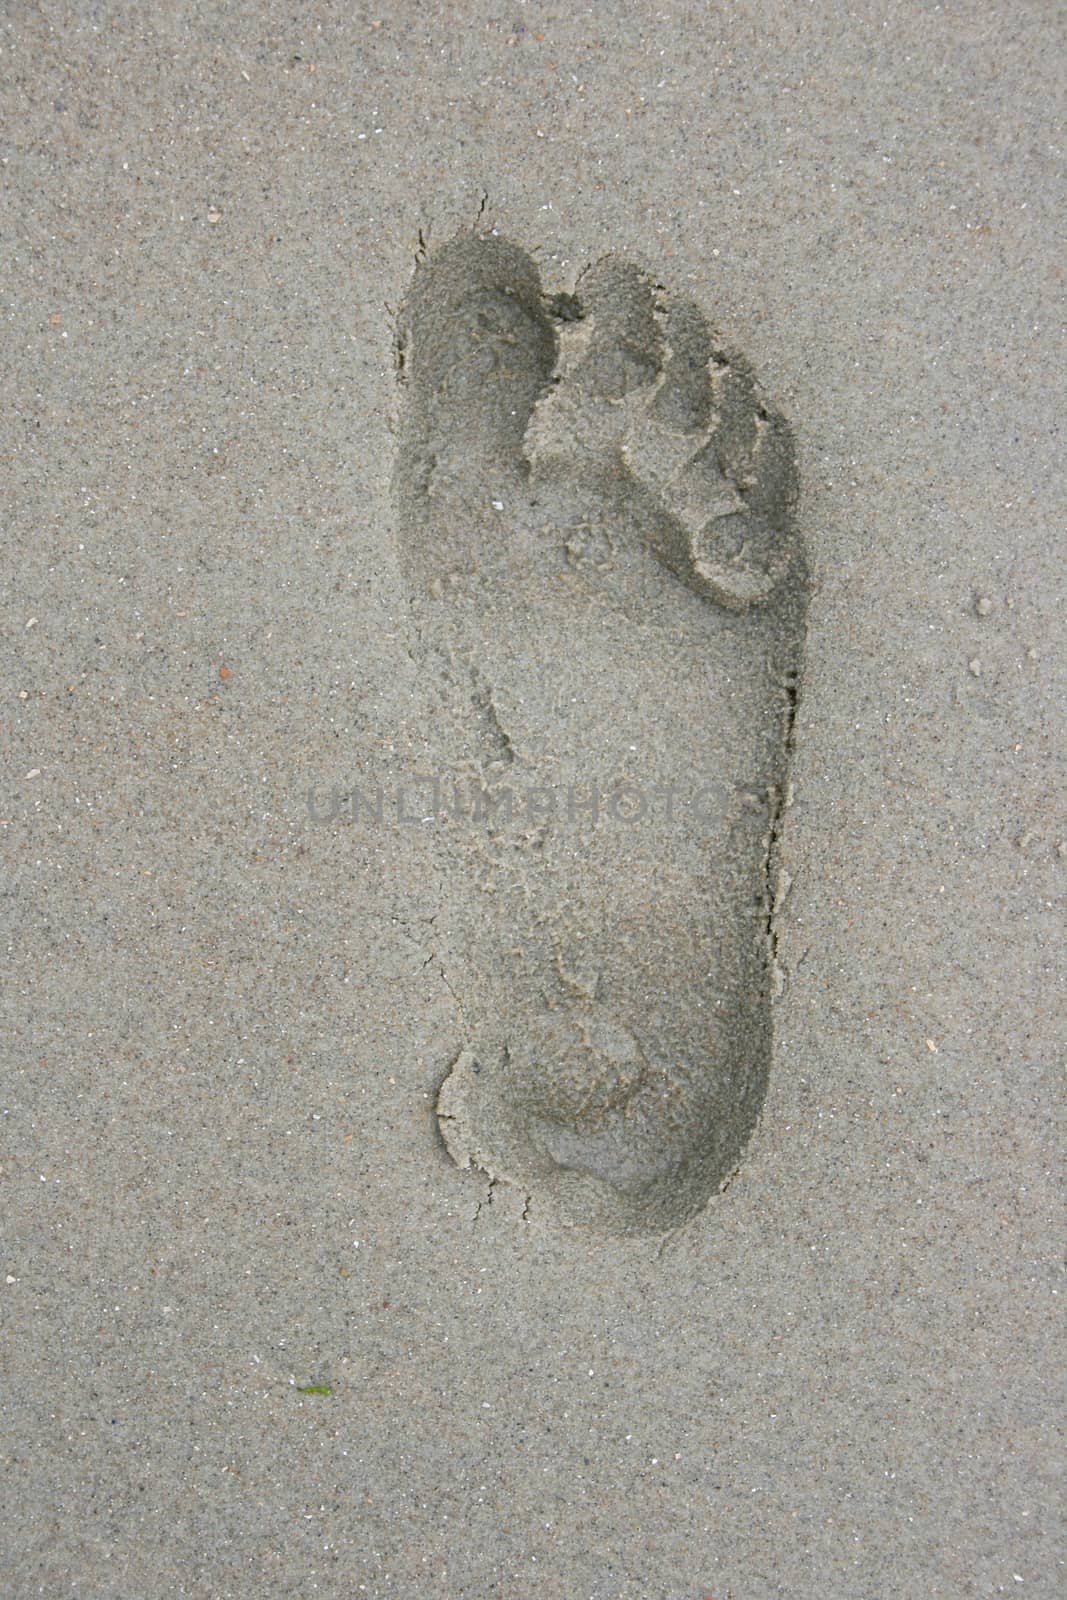 Human Footprint by hadot